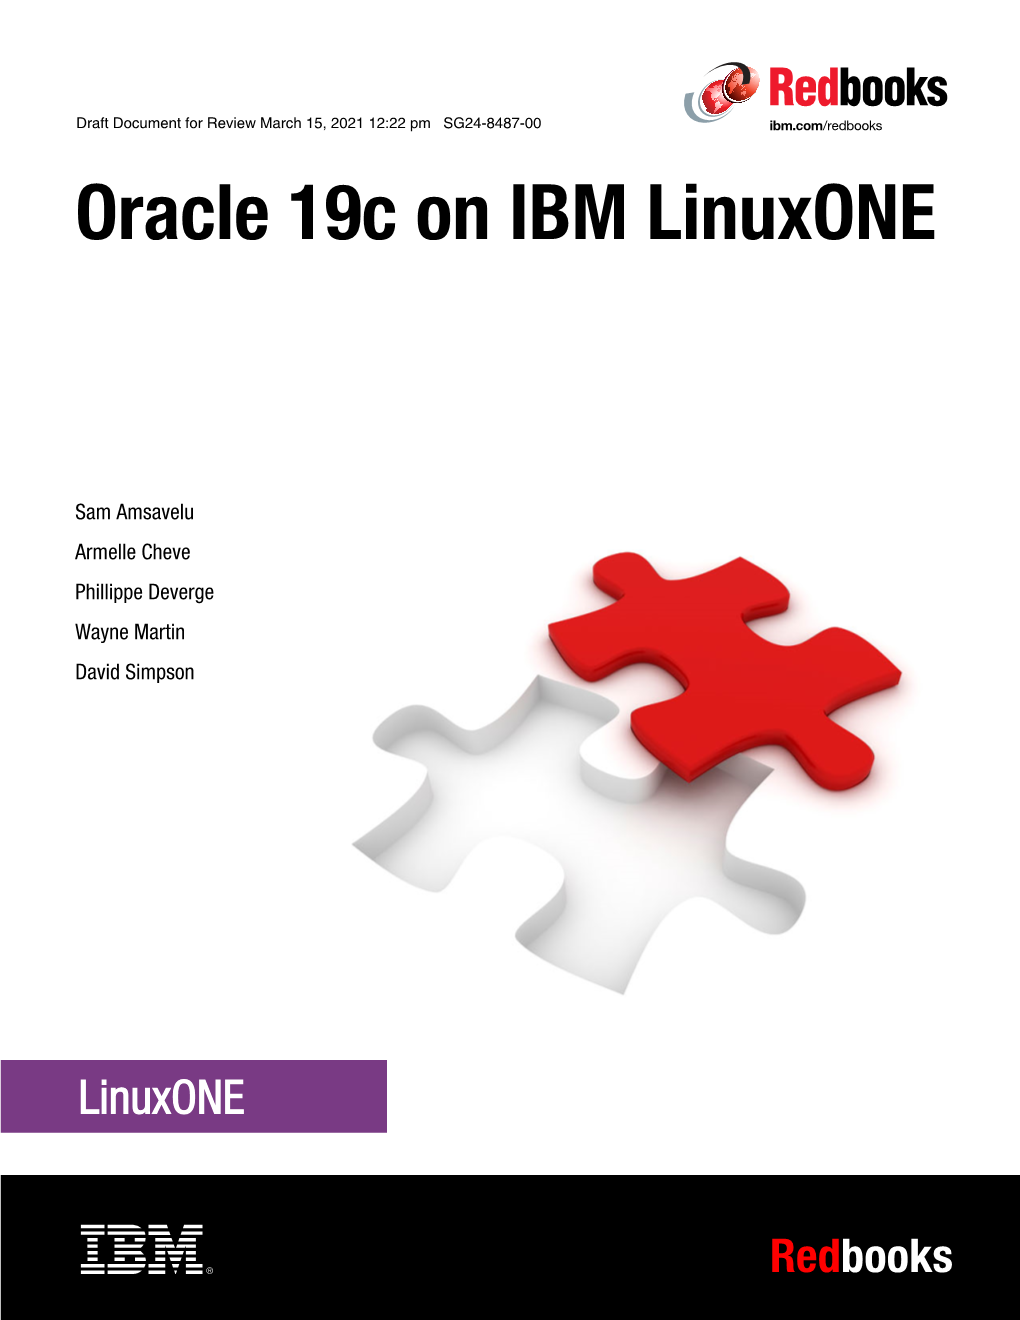 Oracle 19C on IBM Linuxone